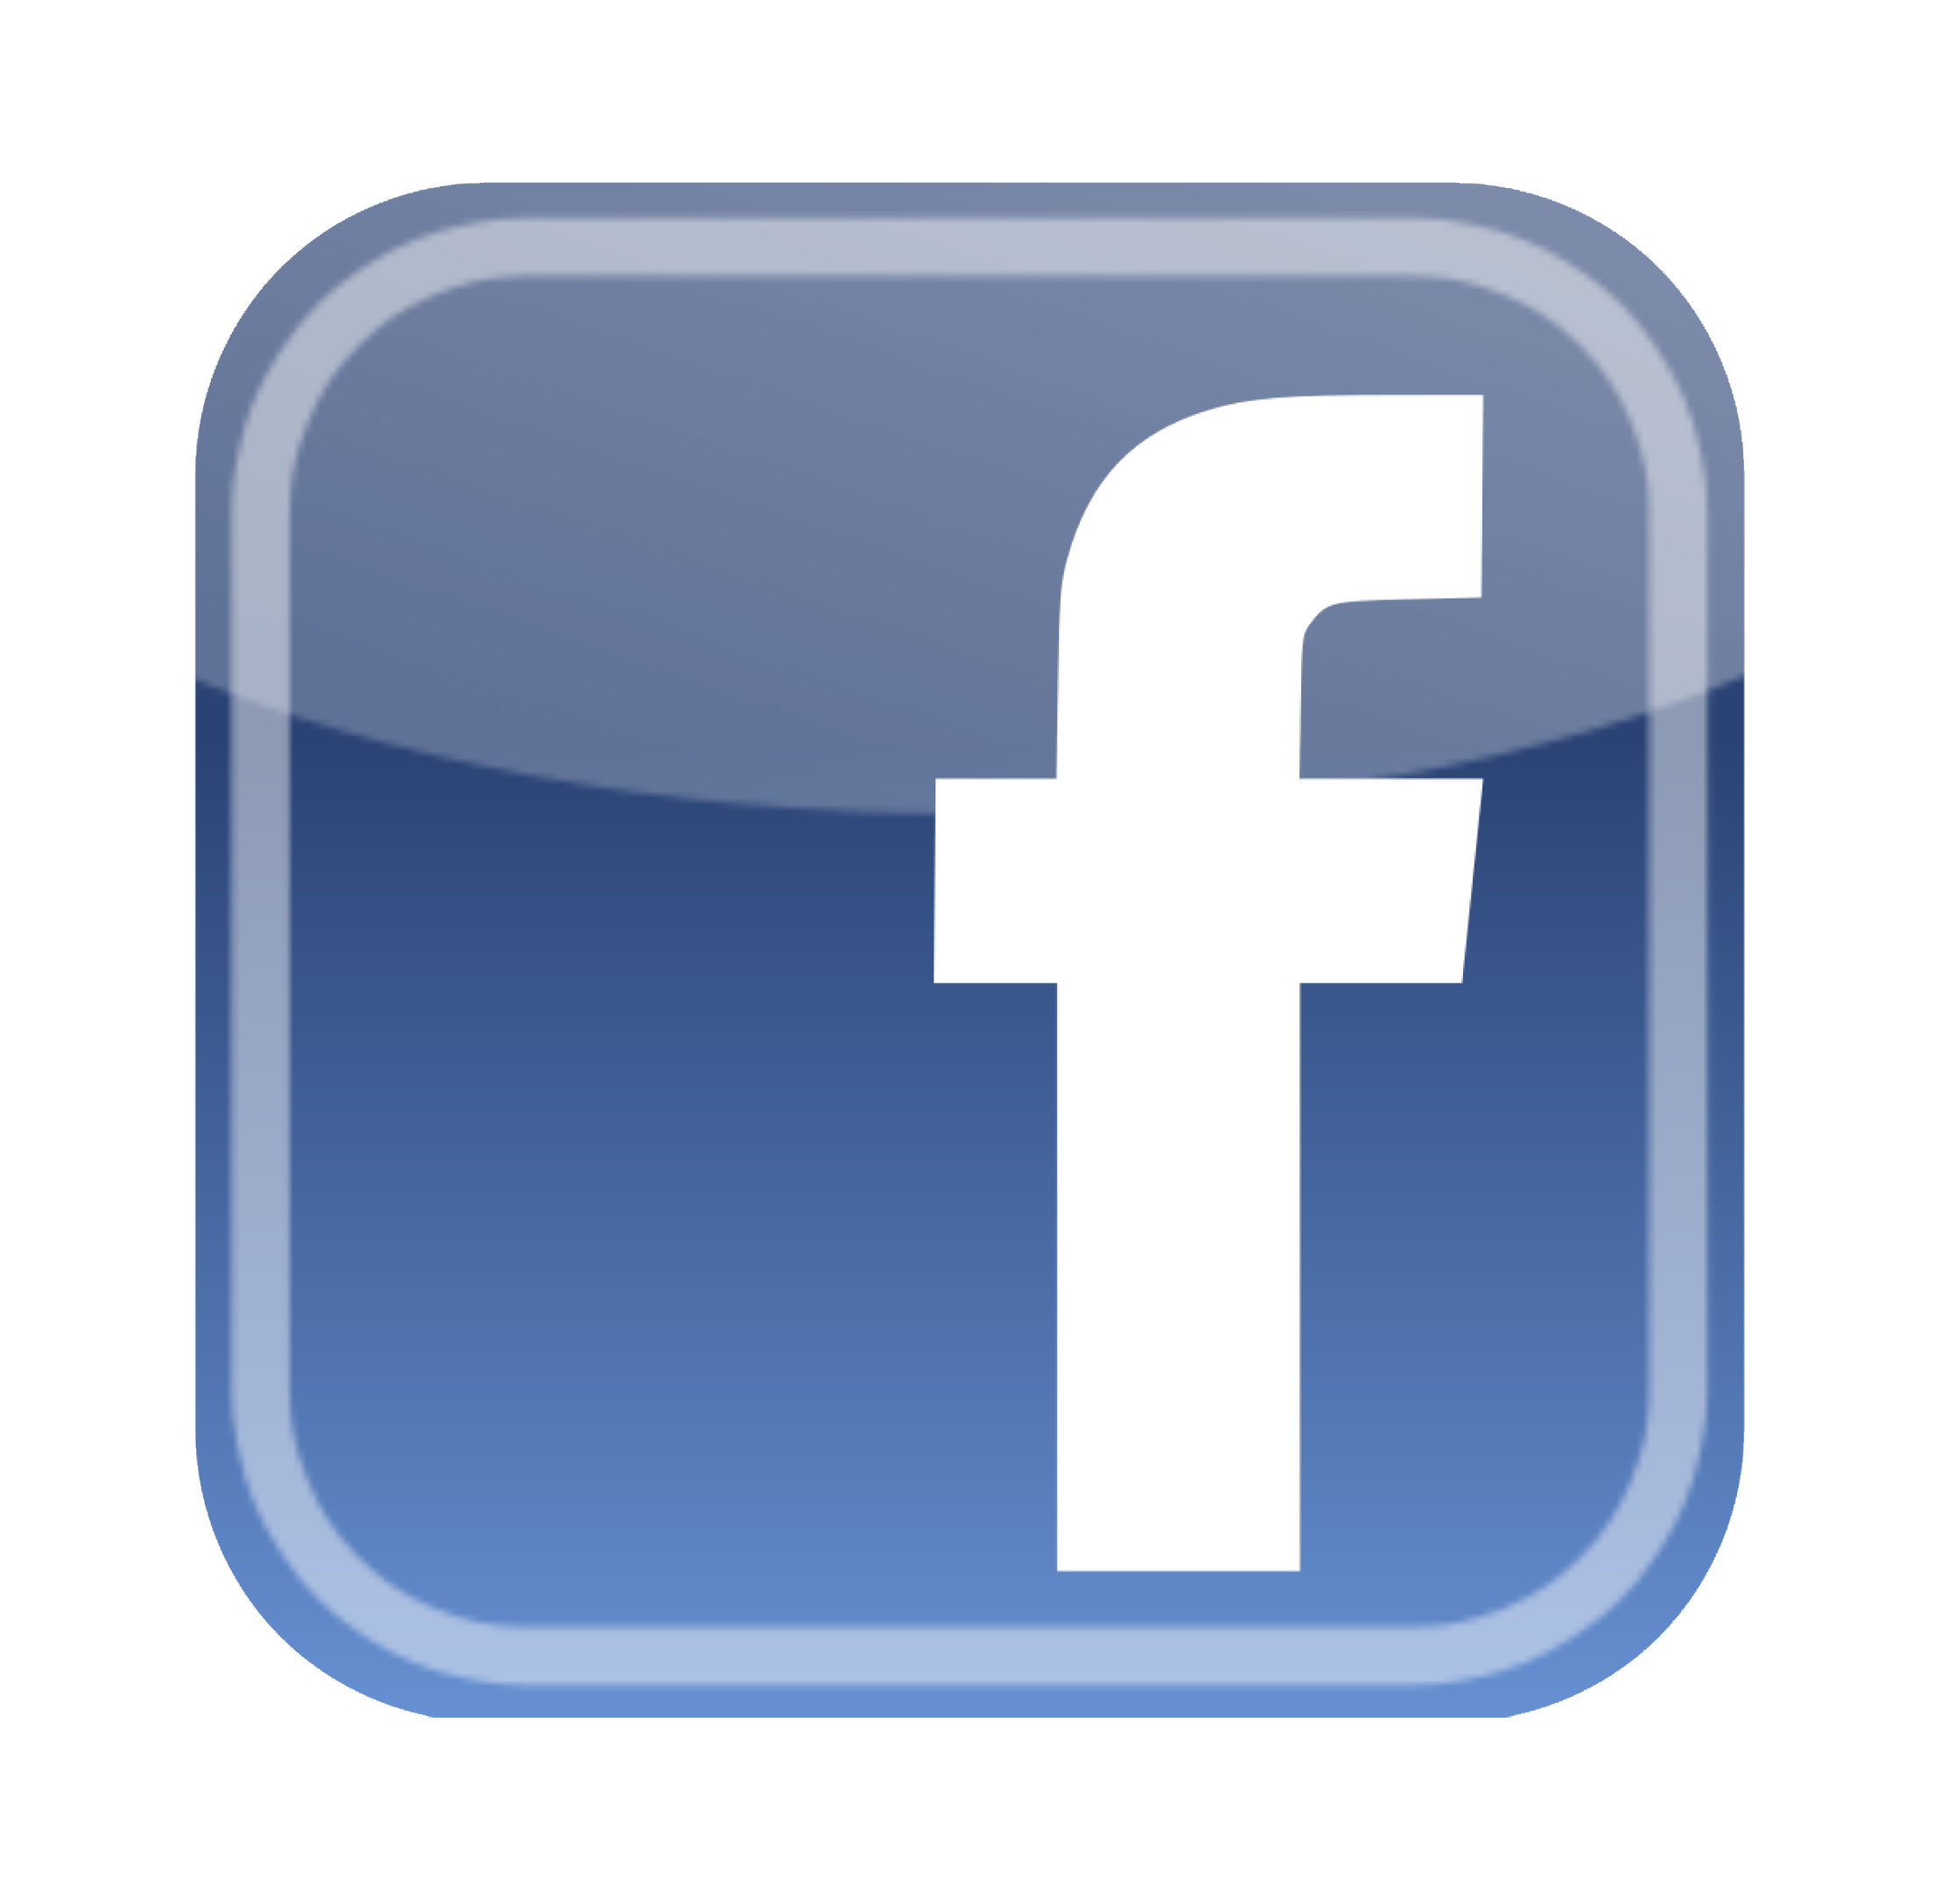 Facebook_logo(2)